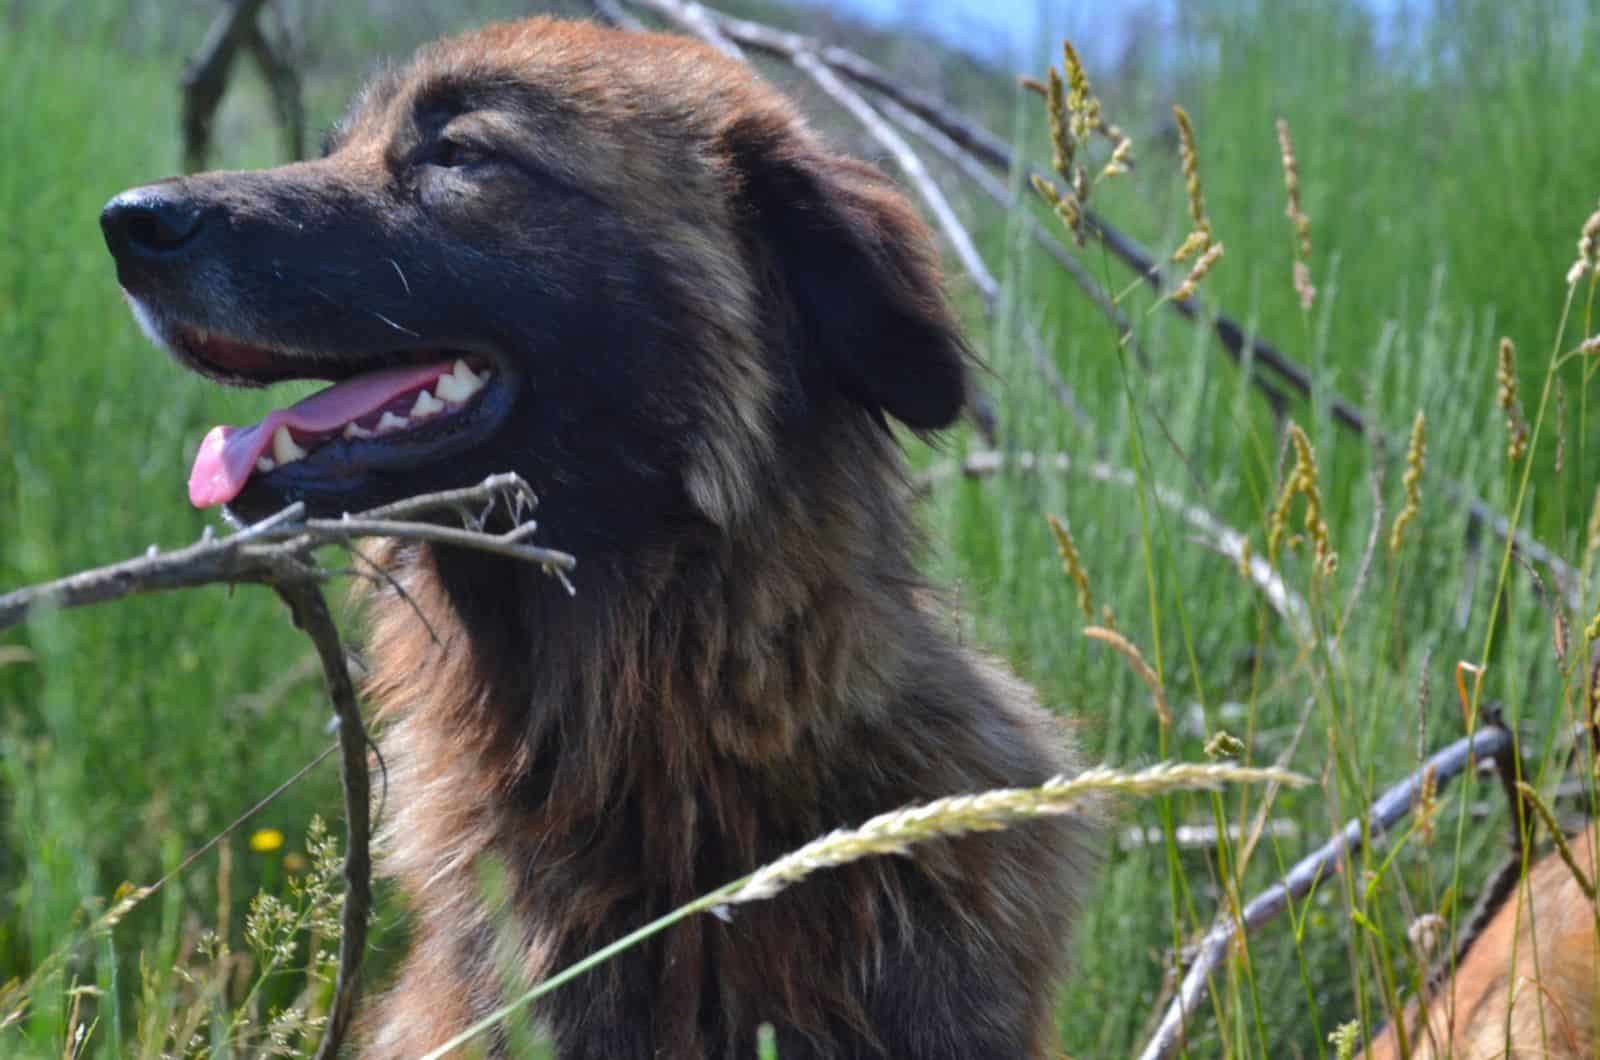 estrela mountain dog in nature